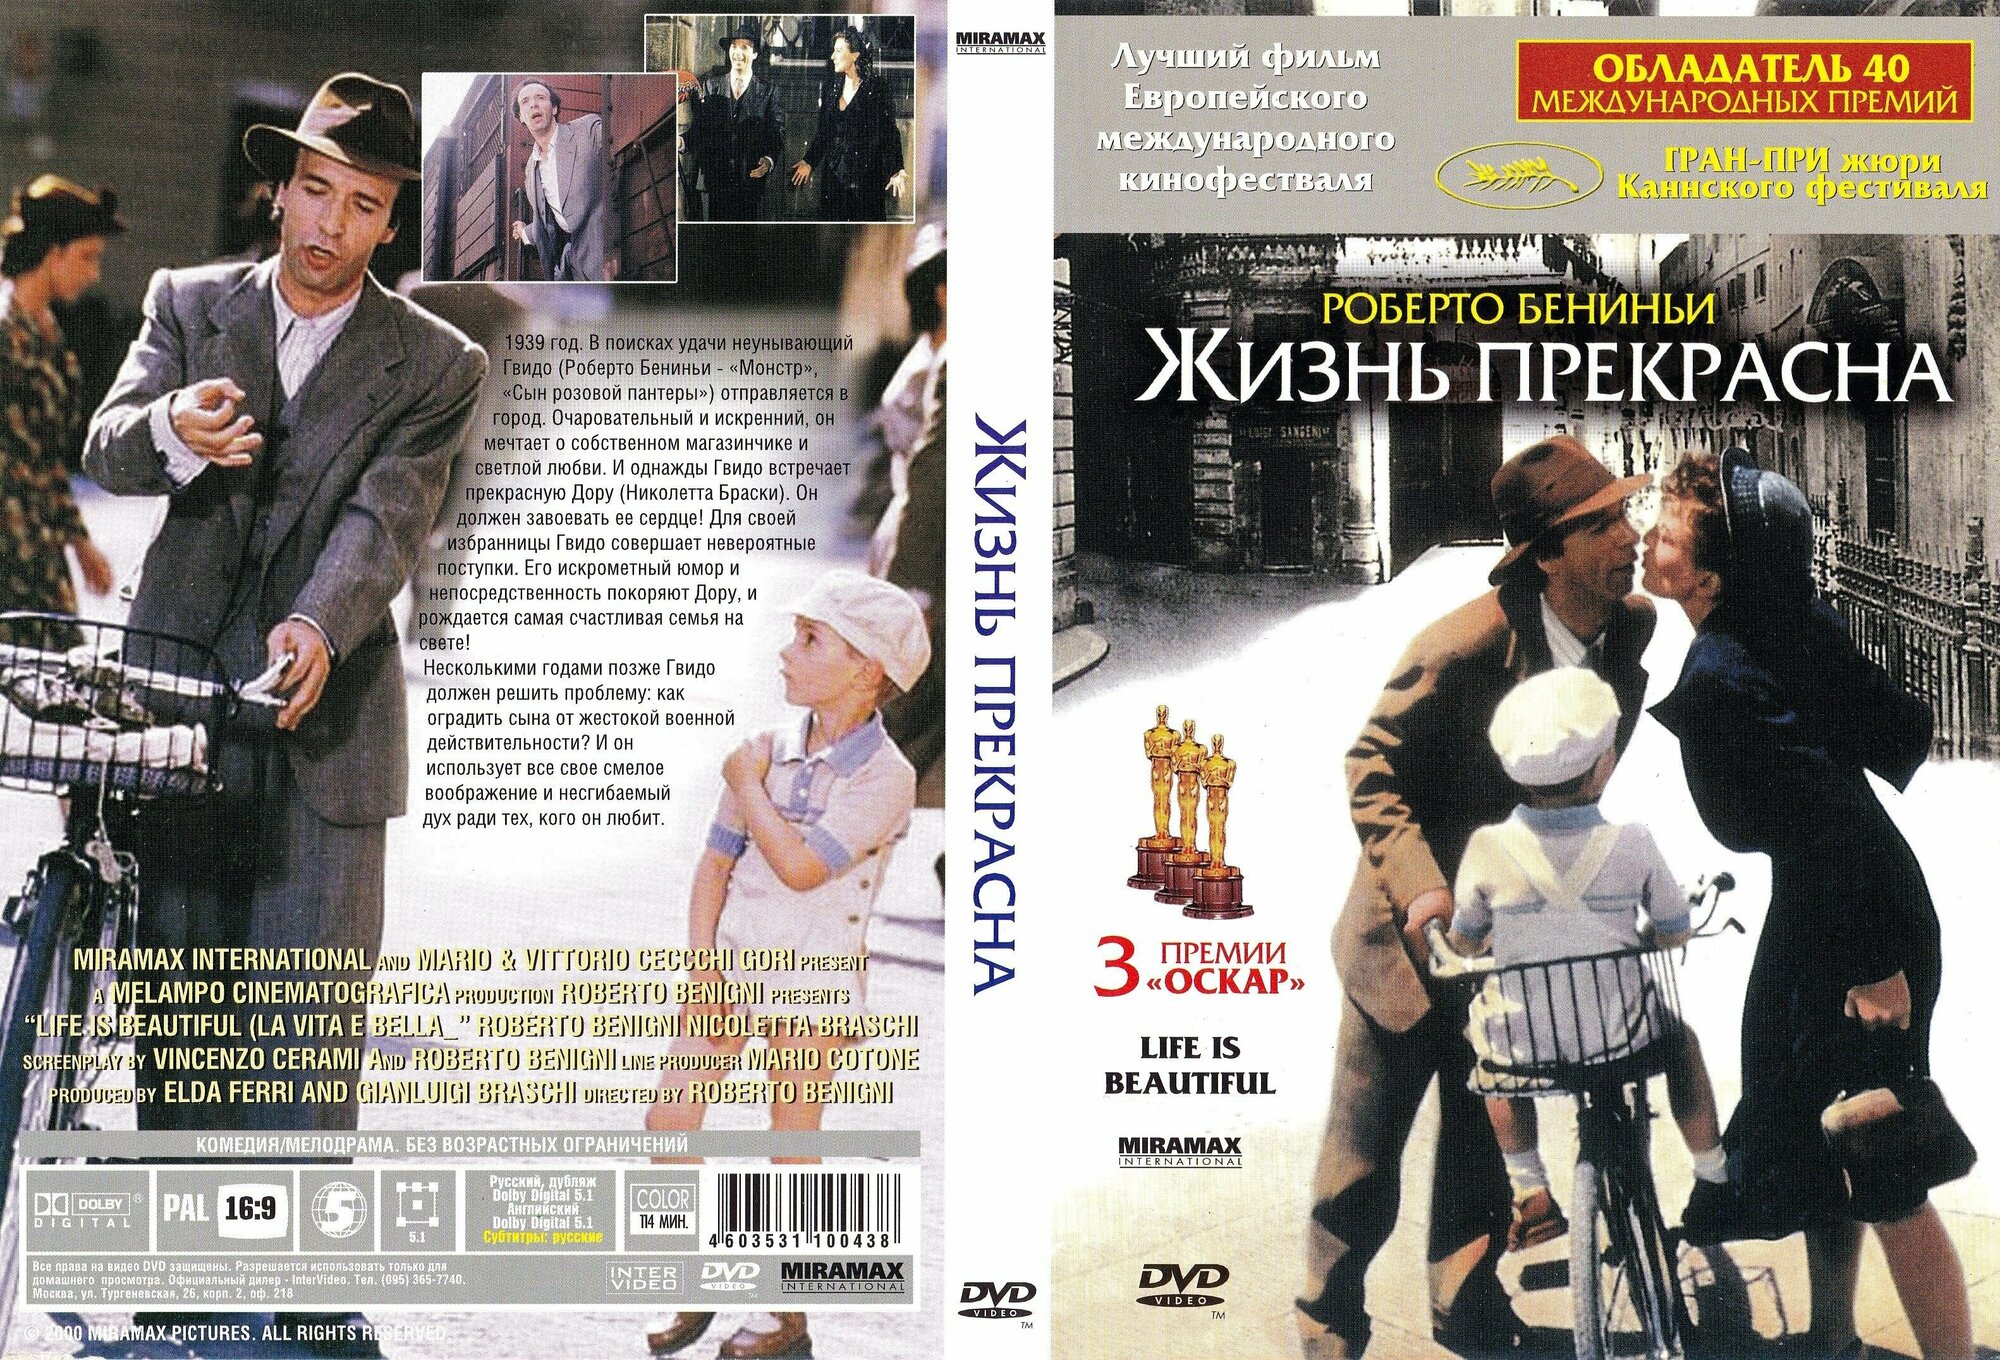 Фильм " Жизнь прекрасна" 1997г. DVD